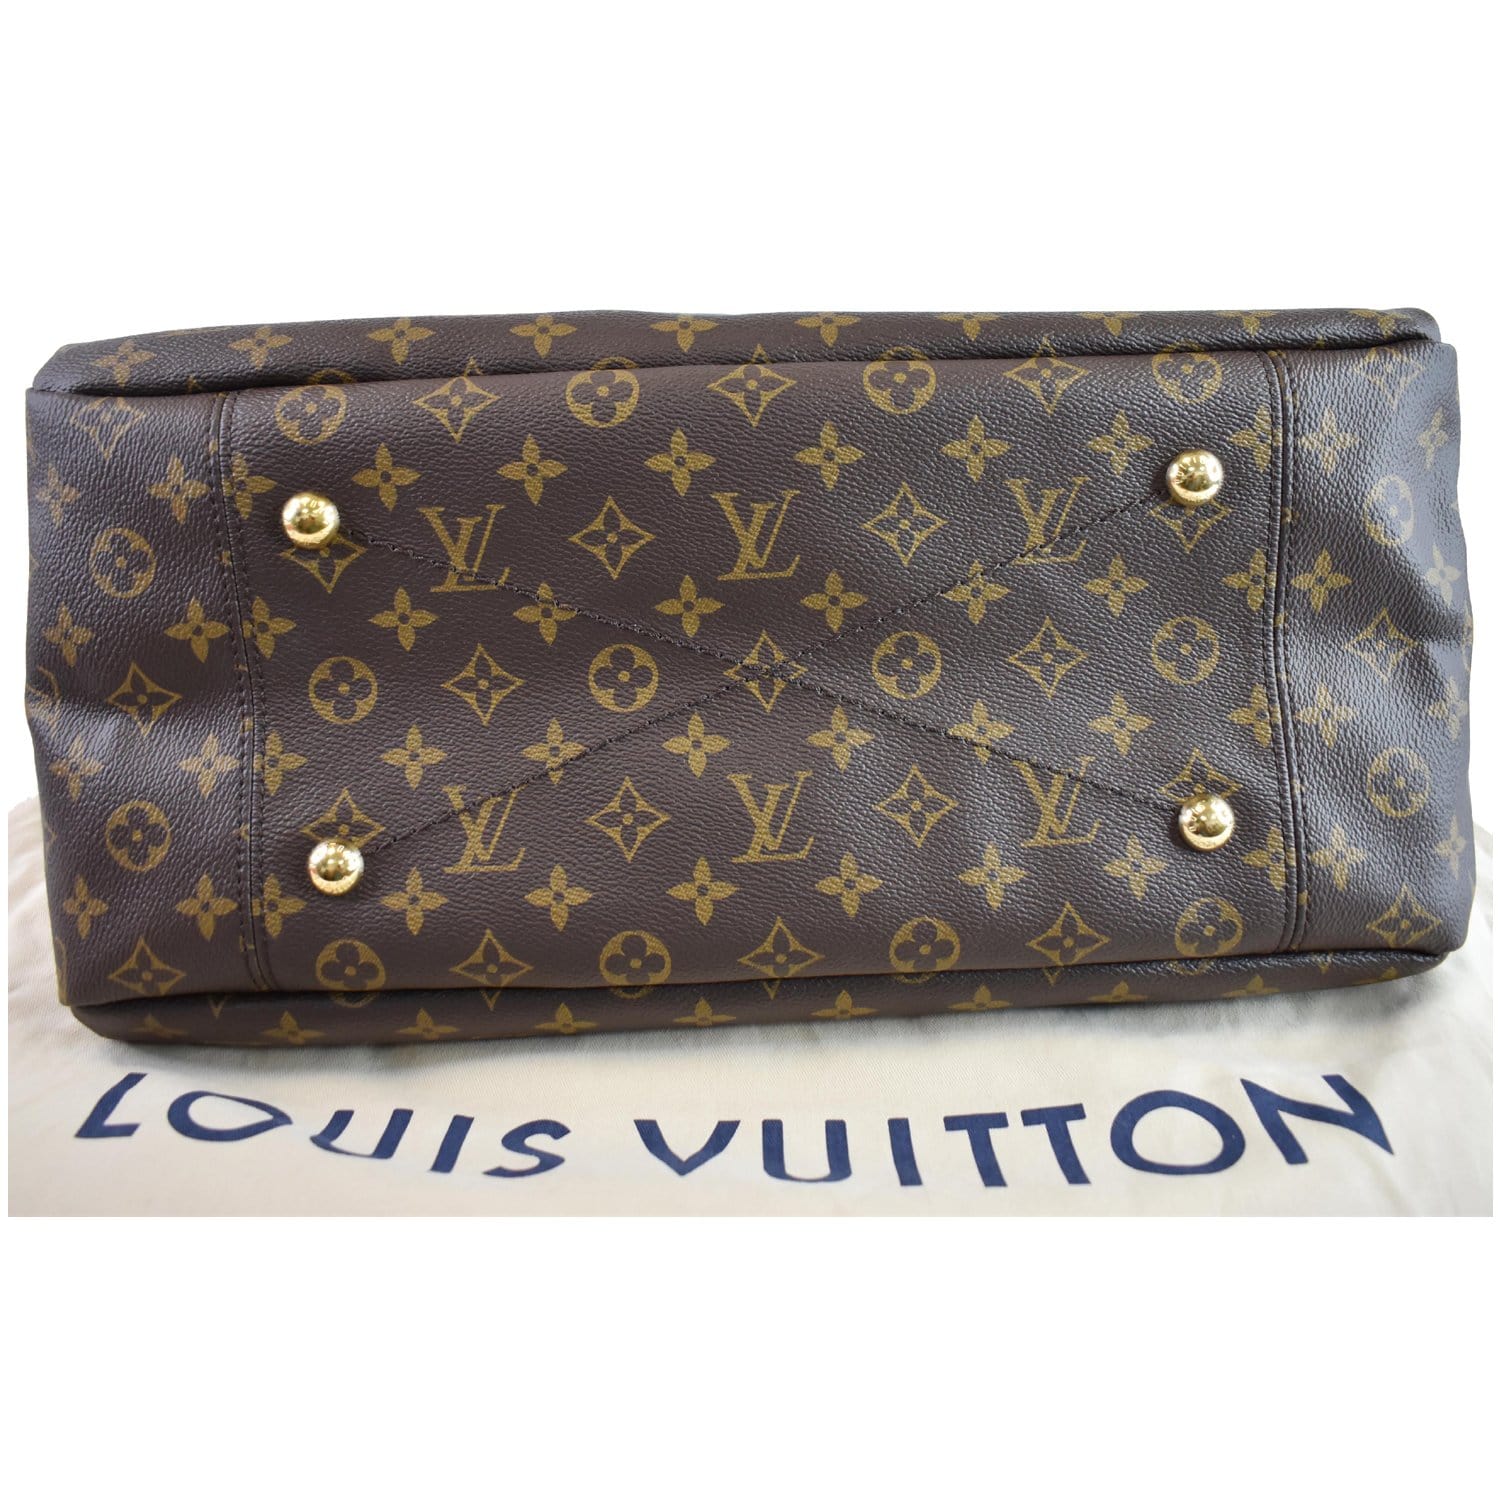 Auth Louis Vuitton Monogram ARTSY MM Shoulder Tote Bag 8K120050